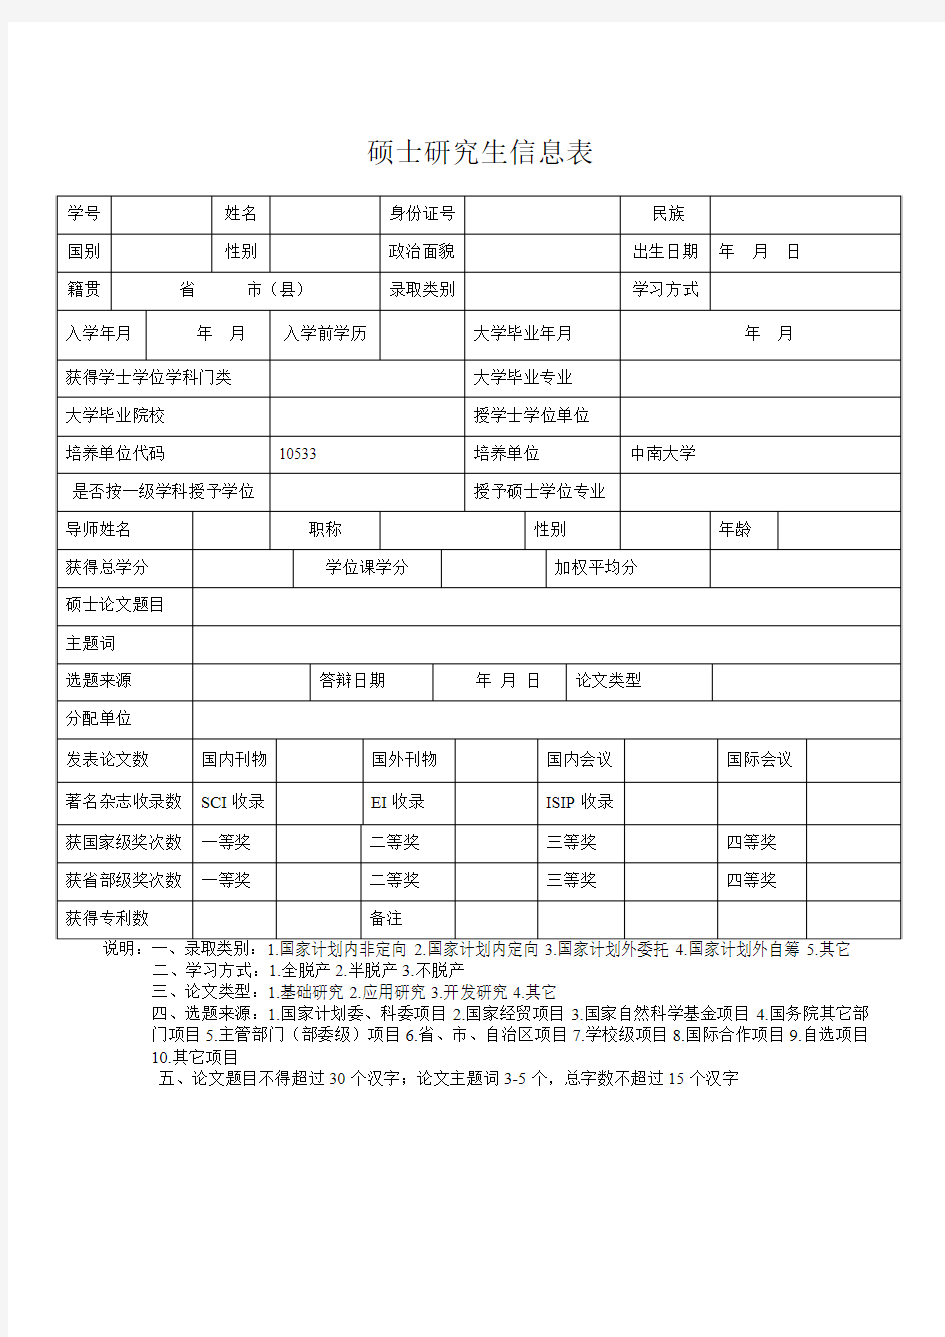 中南大学硕士研究生信息表